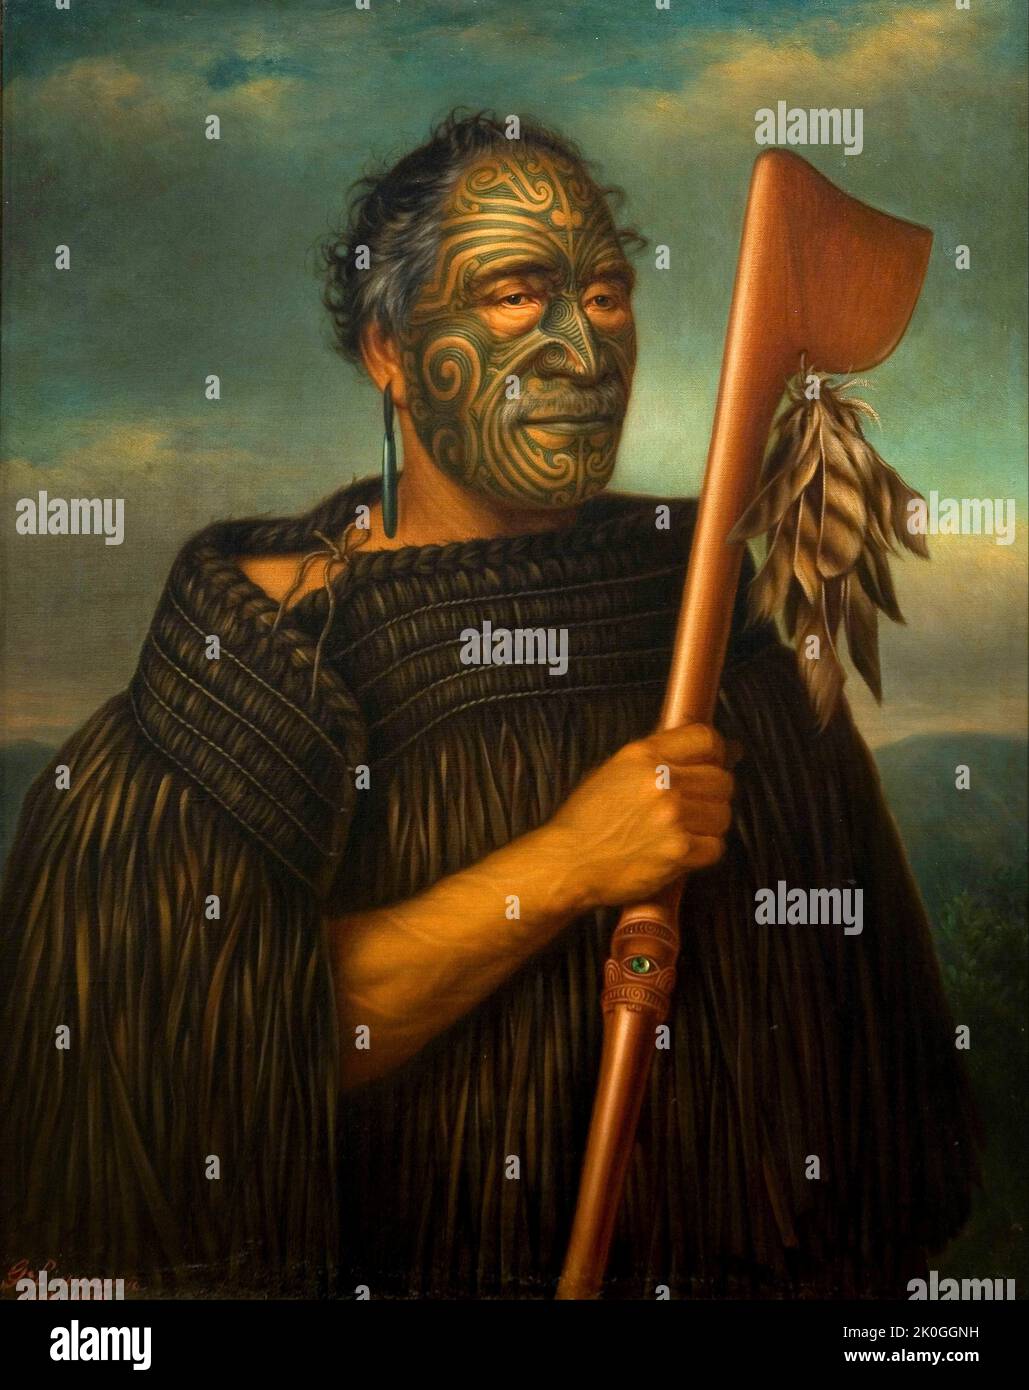 Il portait di Gottfried Lindauer del capo Maori Tamati Waka Nene Foto Stock